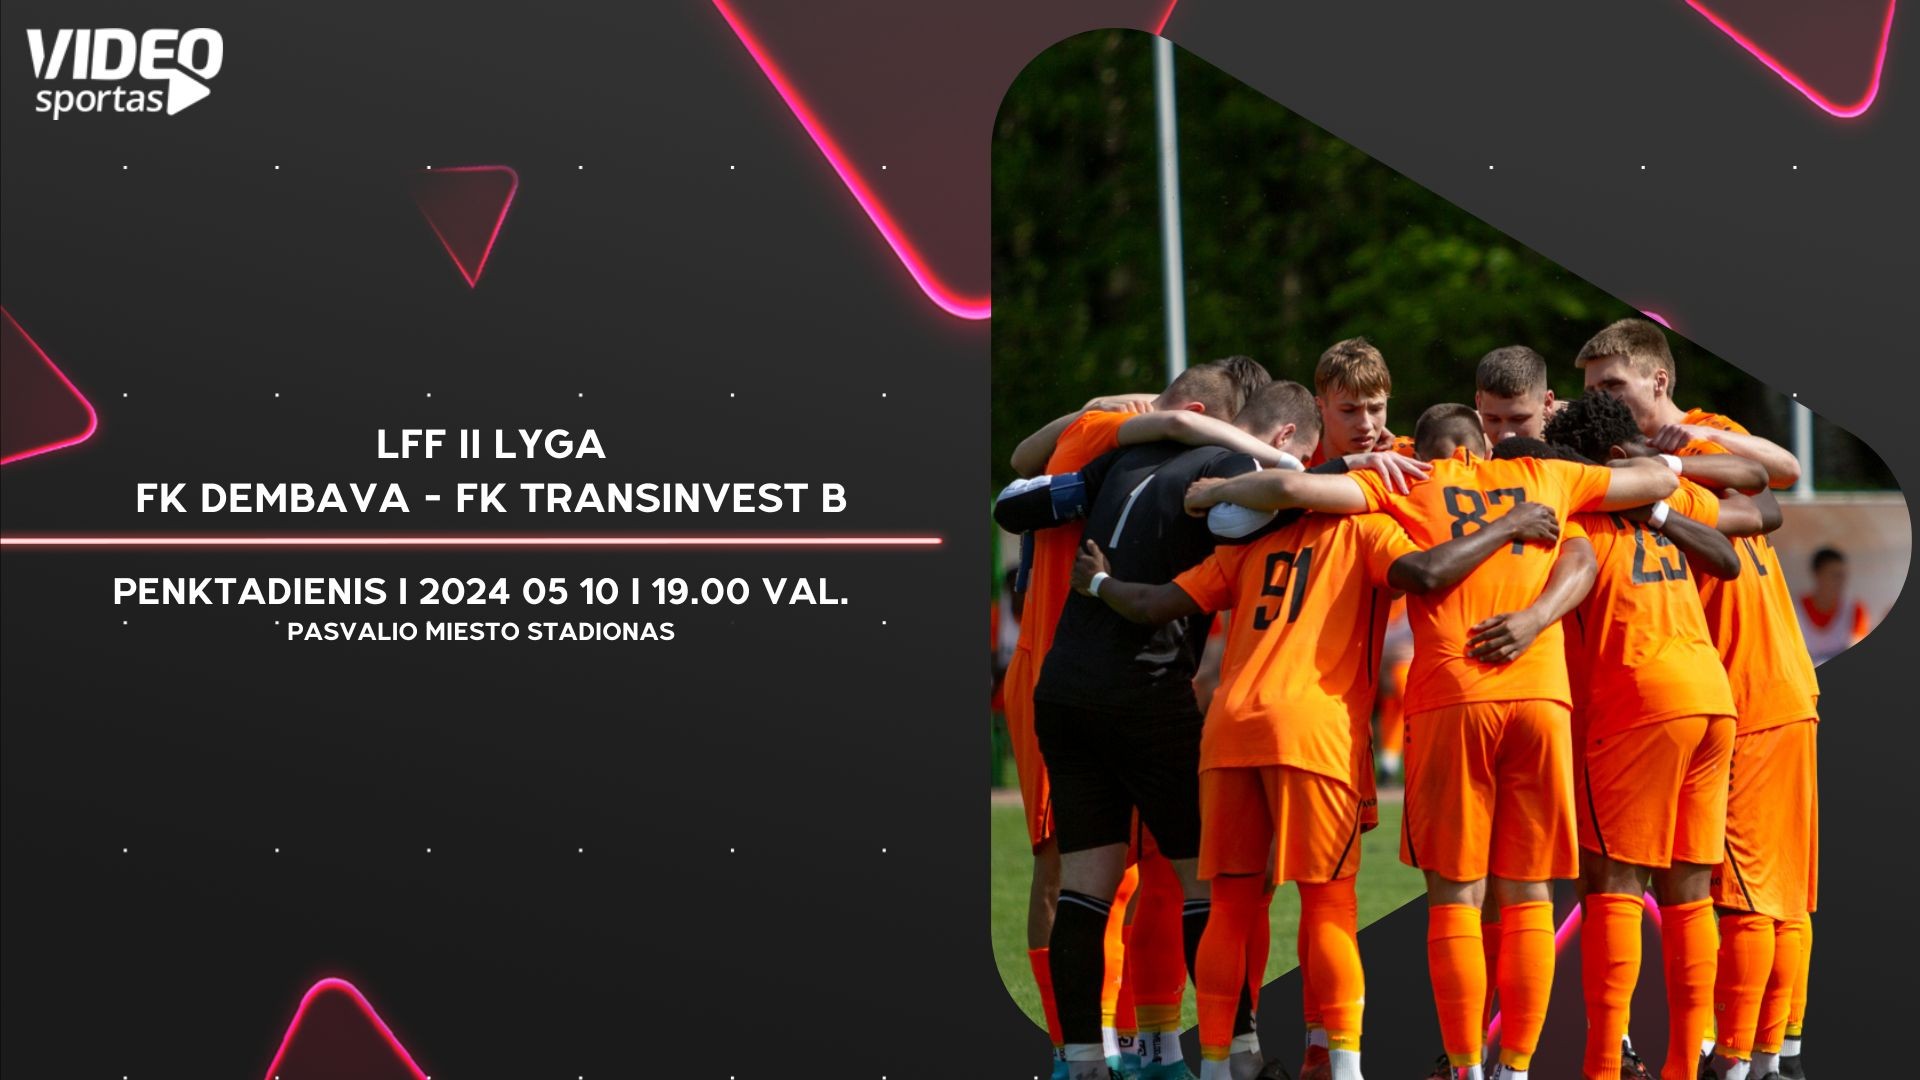 FK DEMBAVA - FK TRANSINVEST B (LFF II LYGA)